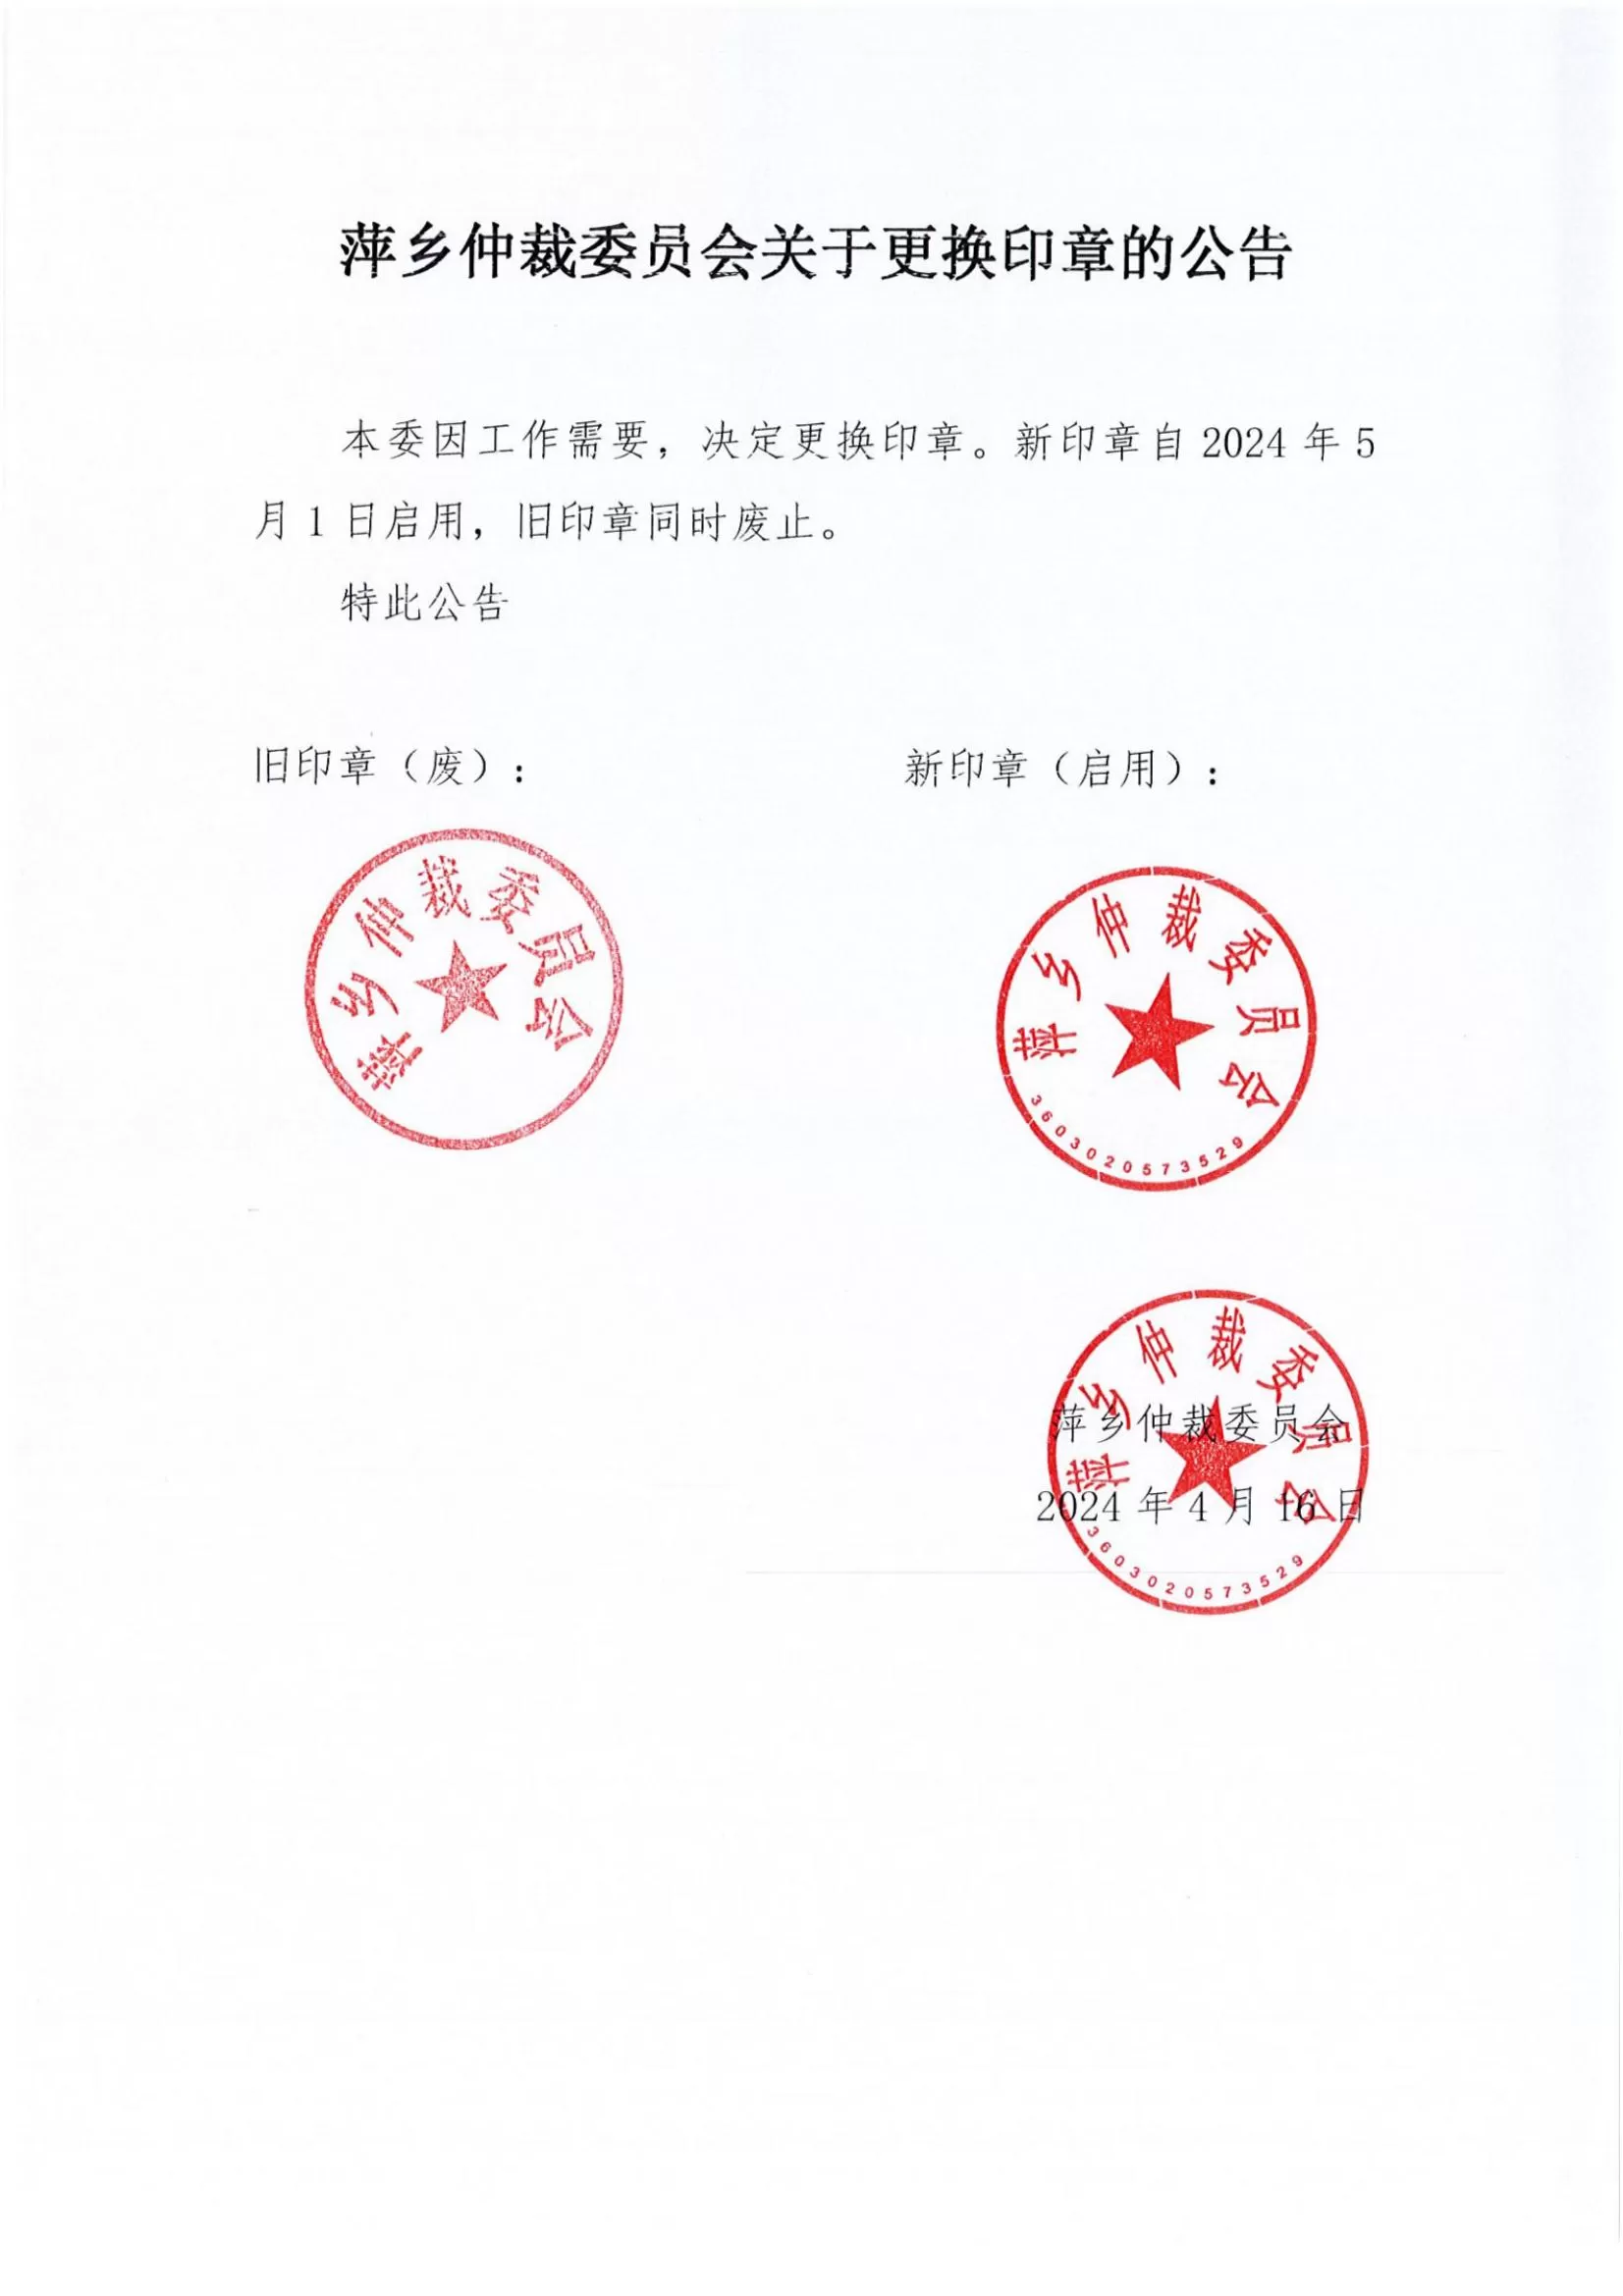 萍乡仲裁委员会关于更换印章的公告